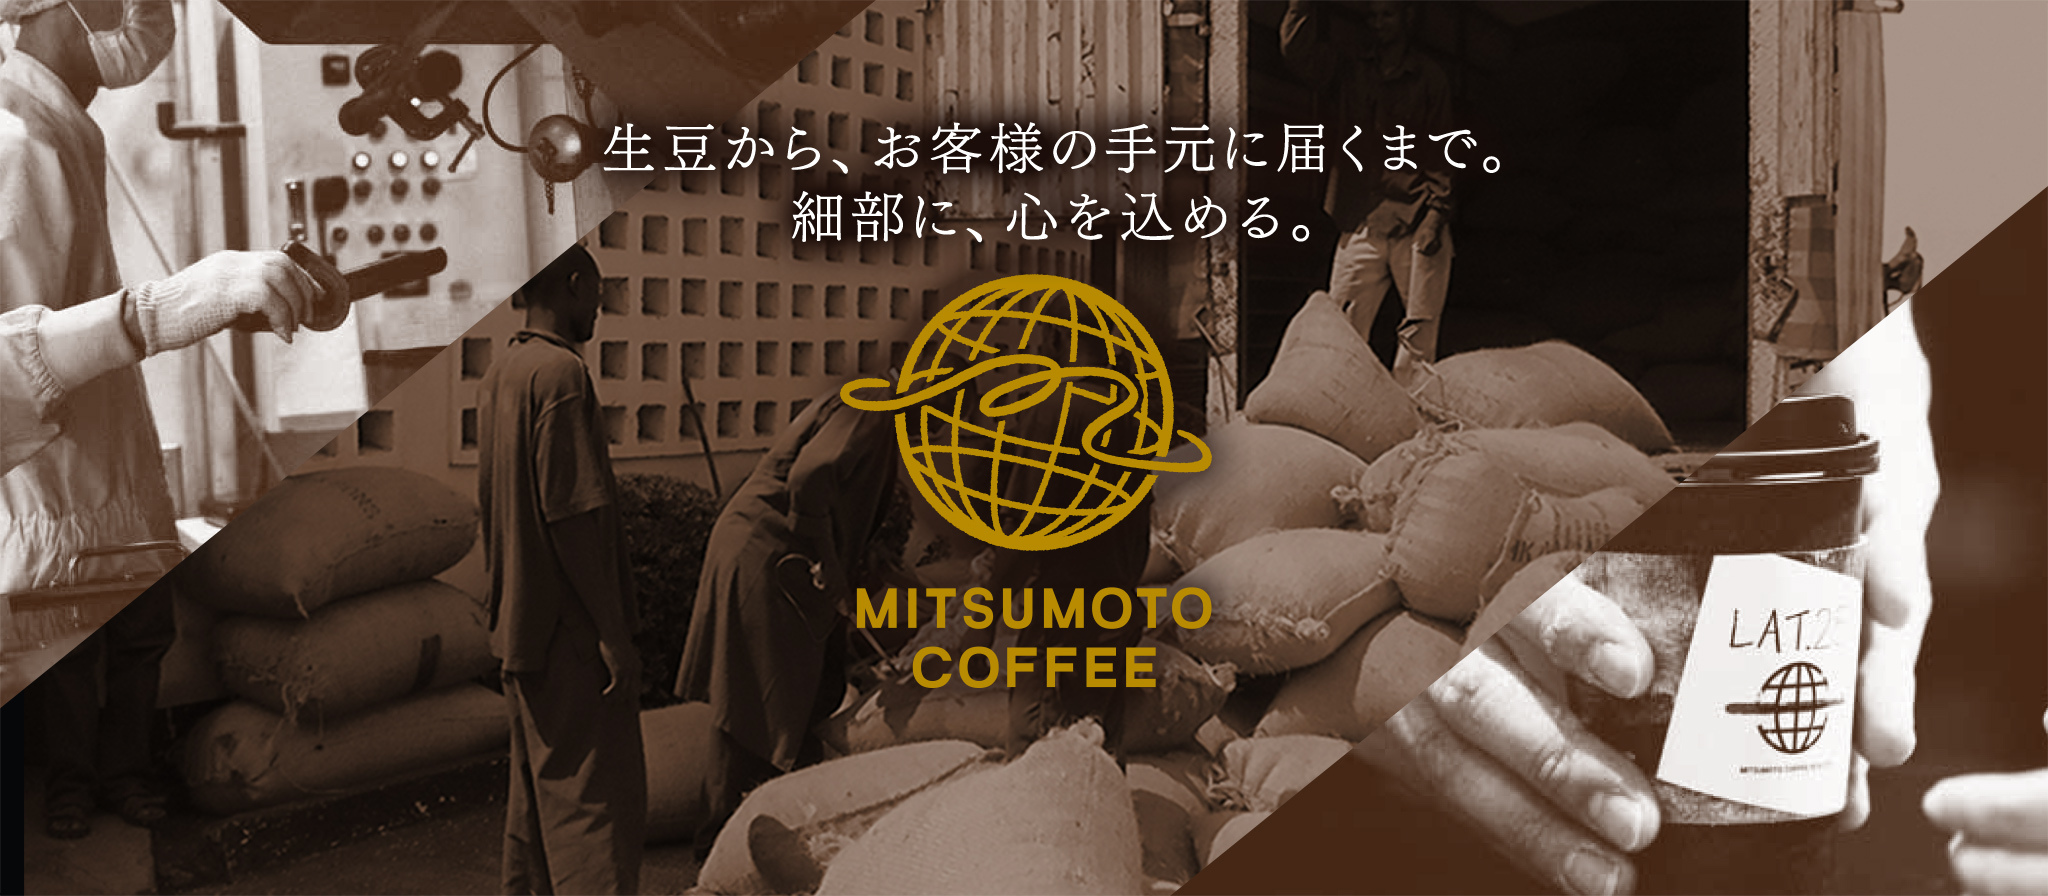 生豆から、お客様の手元に届くまで。細部に、心を込める。MITSUMOTO COFFEE